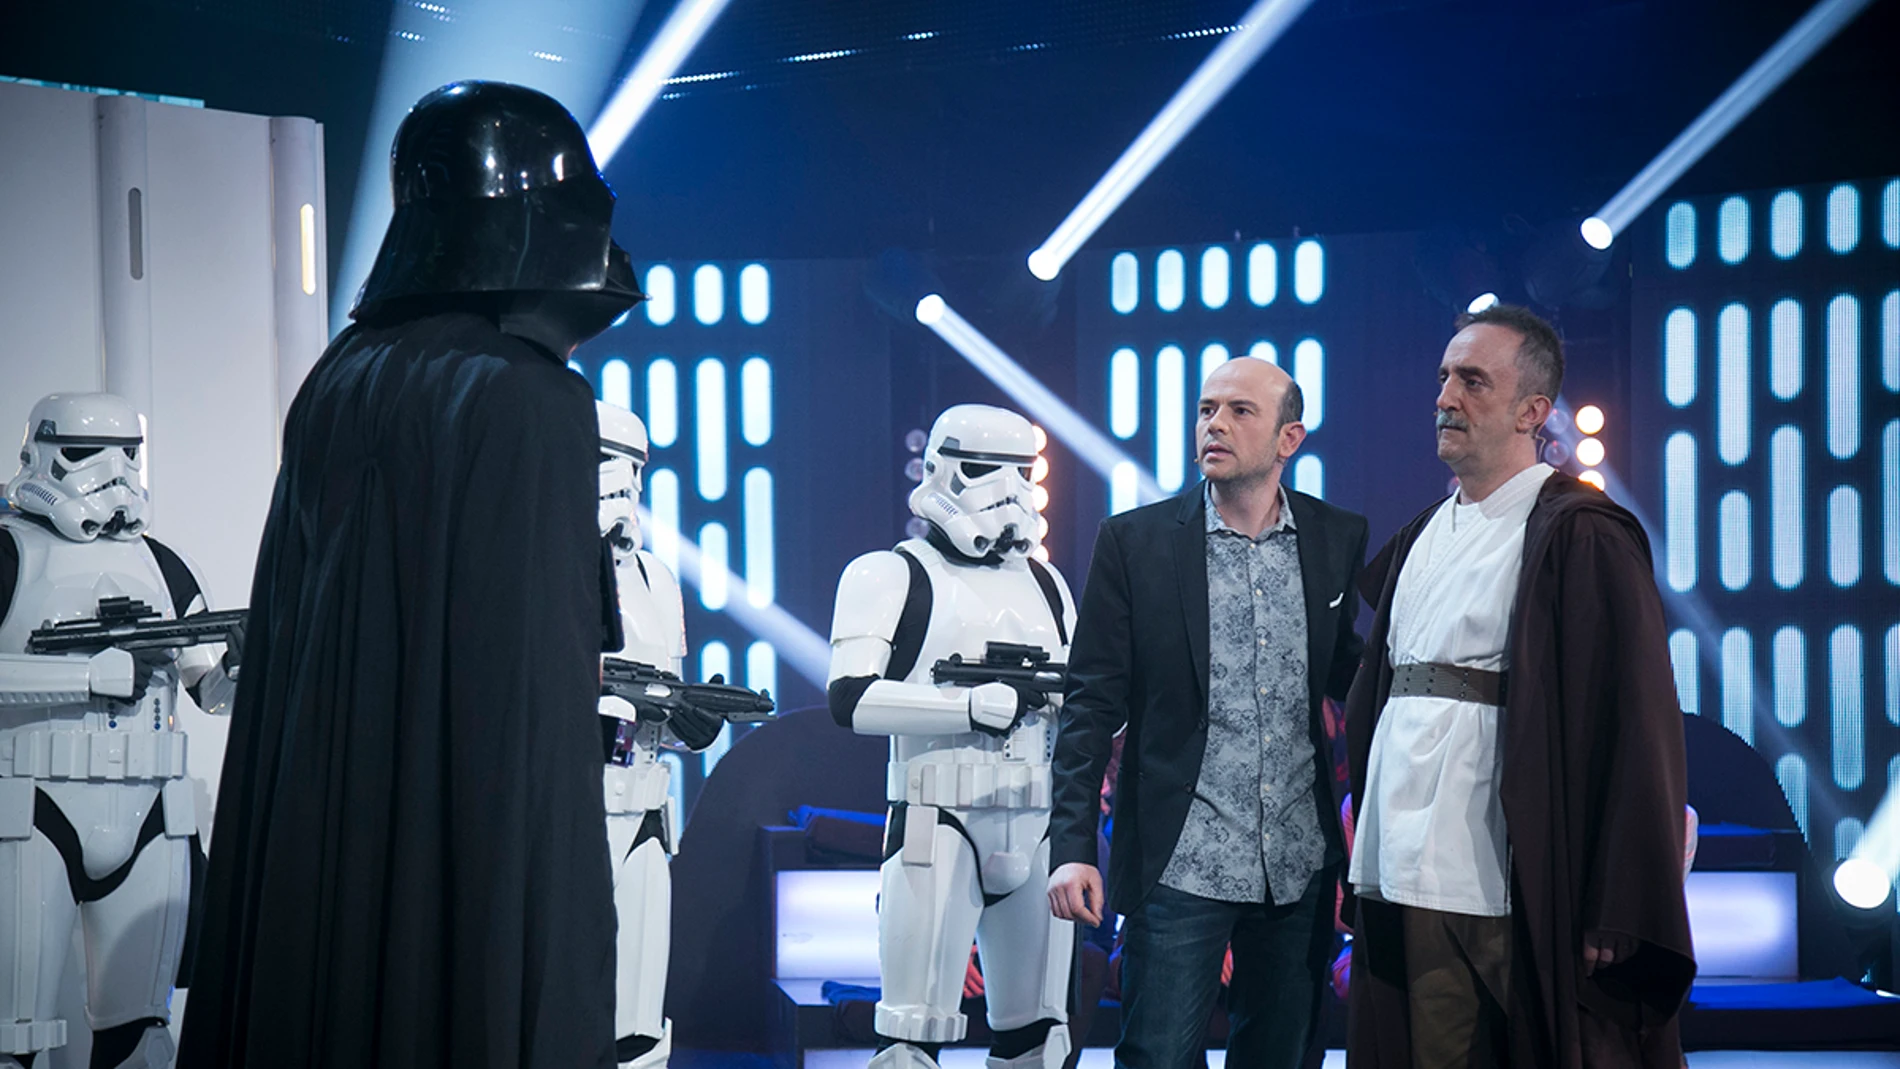 Santi Rodríguez nos sumerge en ‘Star Wars’  para luchar contra el lado oscuro como Los Jedis en 'Hipnotízame'